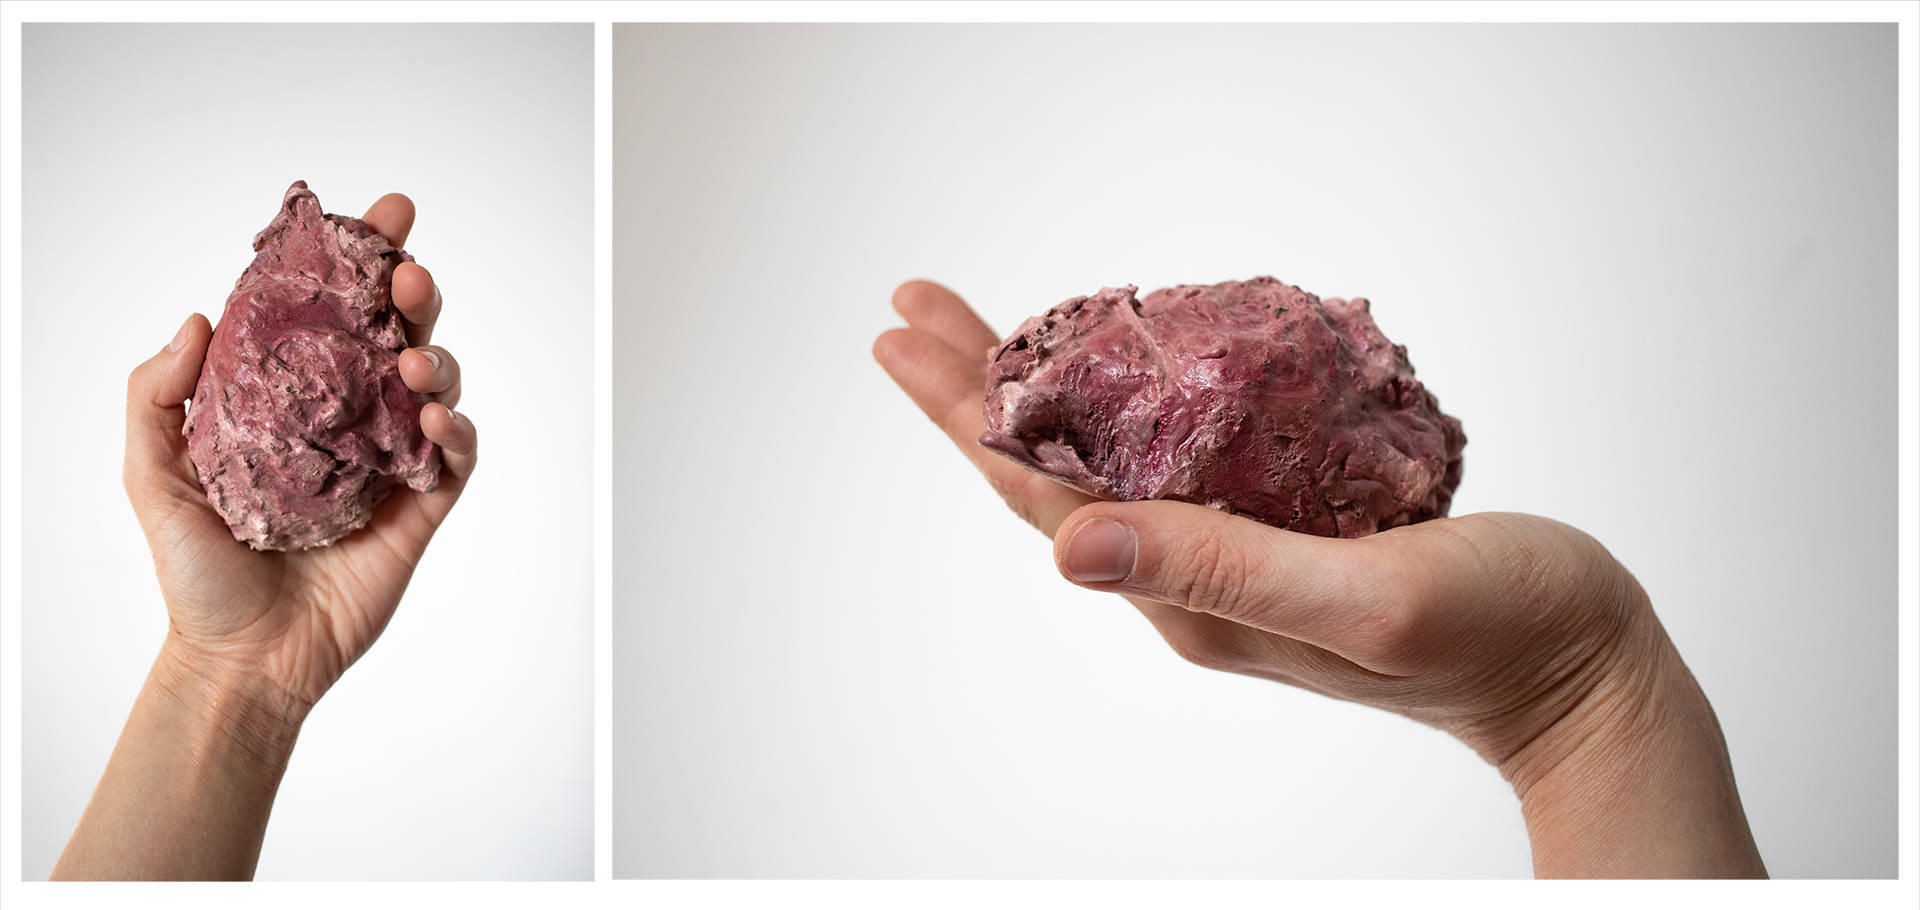 dwa zdjęcia jedno obok drugiego, przedstawiające małą formę wykonaną z wosku, przypominającą kawałek mięsa wielkości serca, trzymany w ręce na tle białej ściany. Prawe zdjęcie - widok z góry, lewe - z boku.